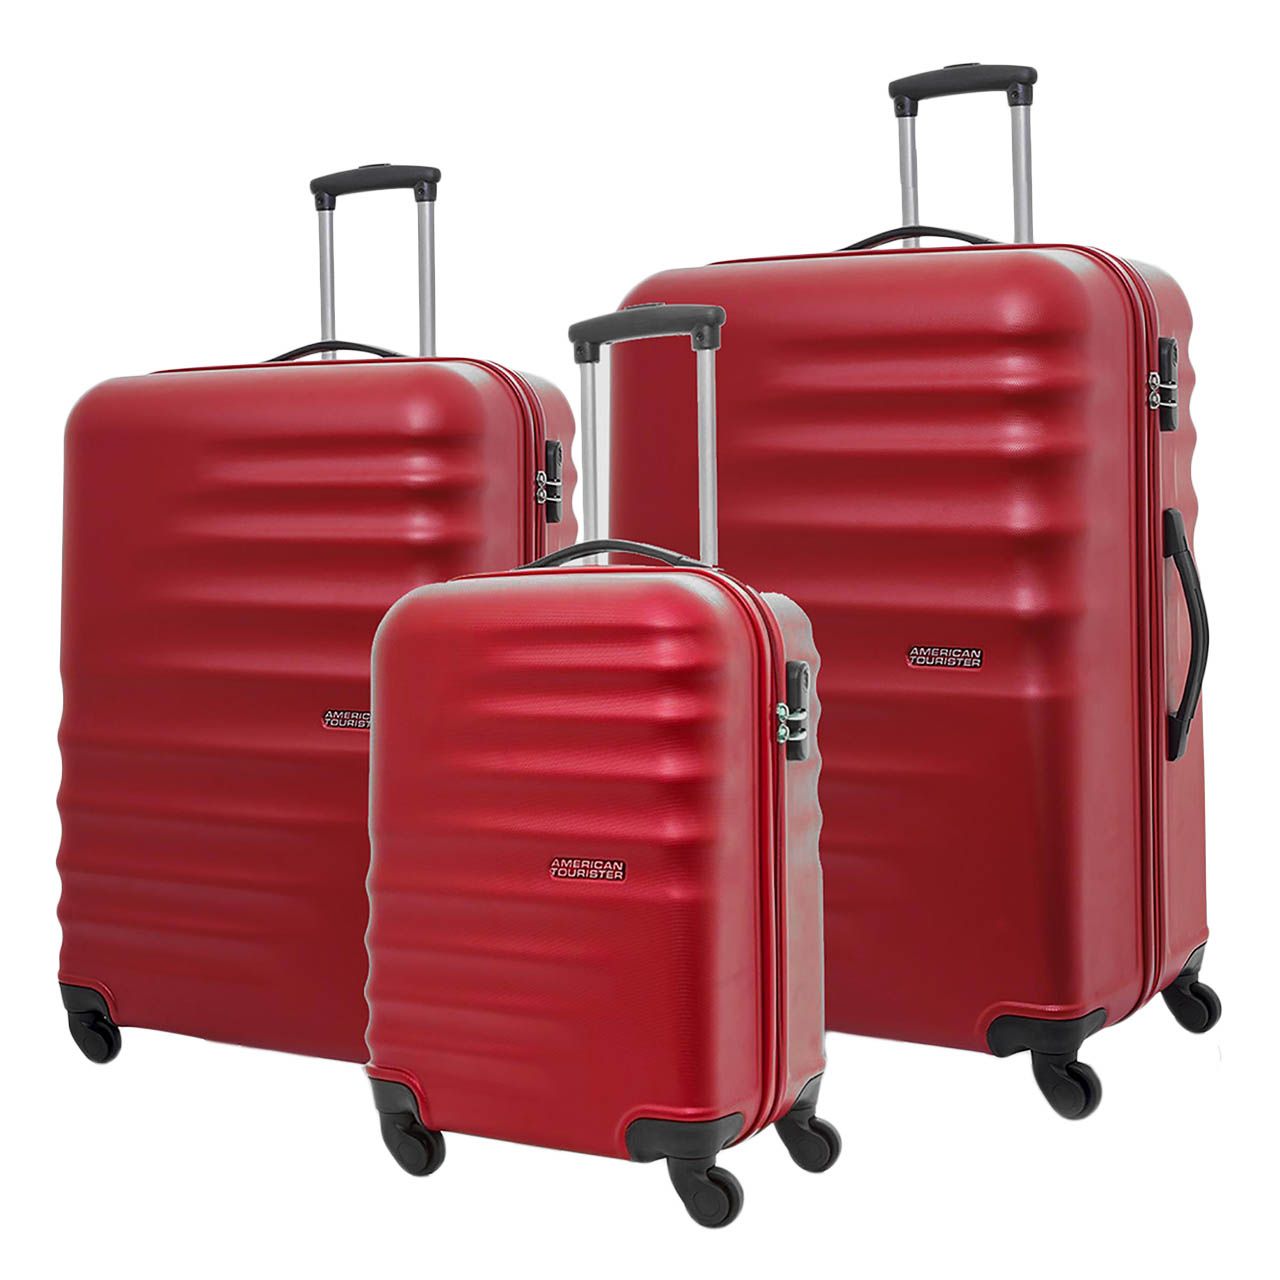 مجموعه سه عددی چمدان امریکن توریستر مدل PRESTON AG9 -  - 1